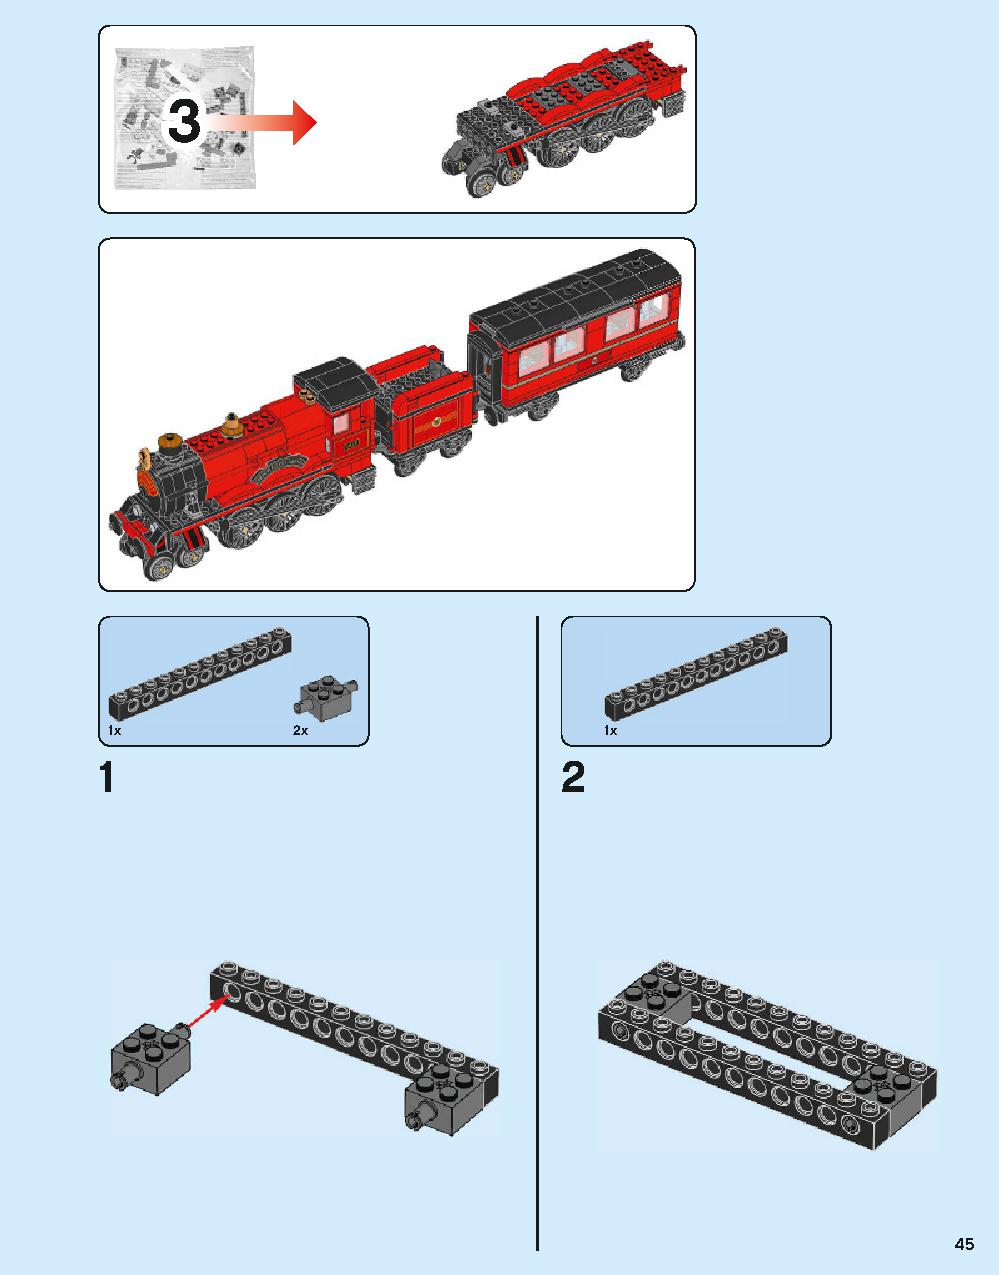 Hogwarts Express 75955 LEGO information LEGO instructions 45 page